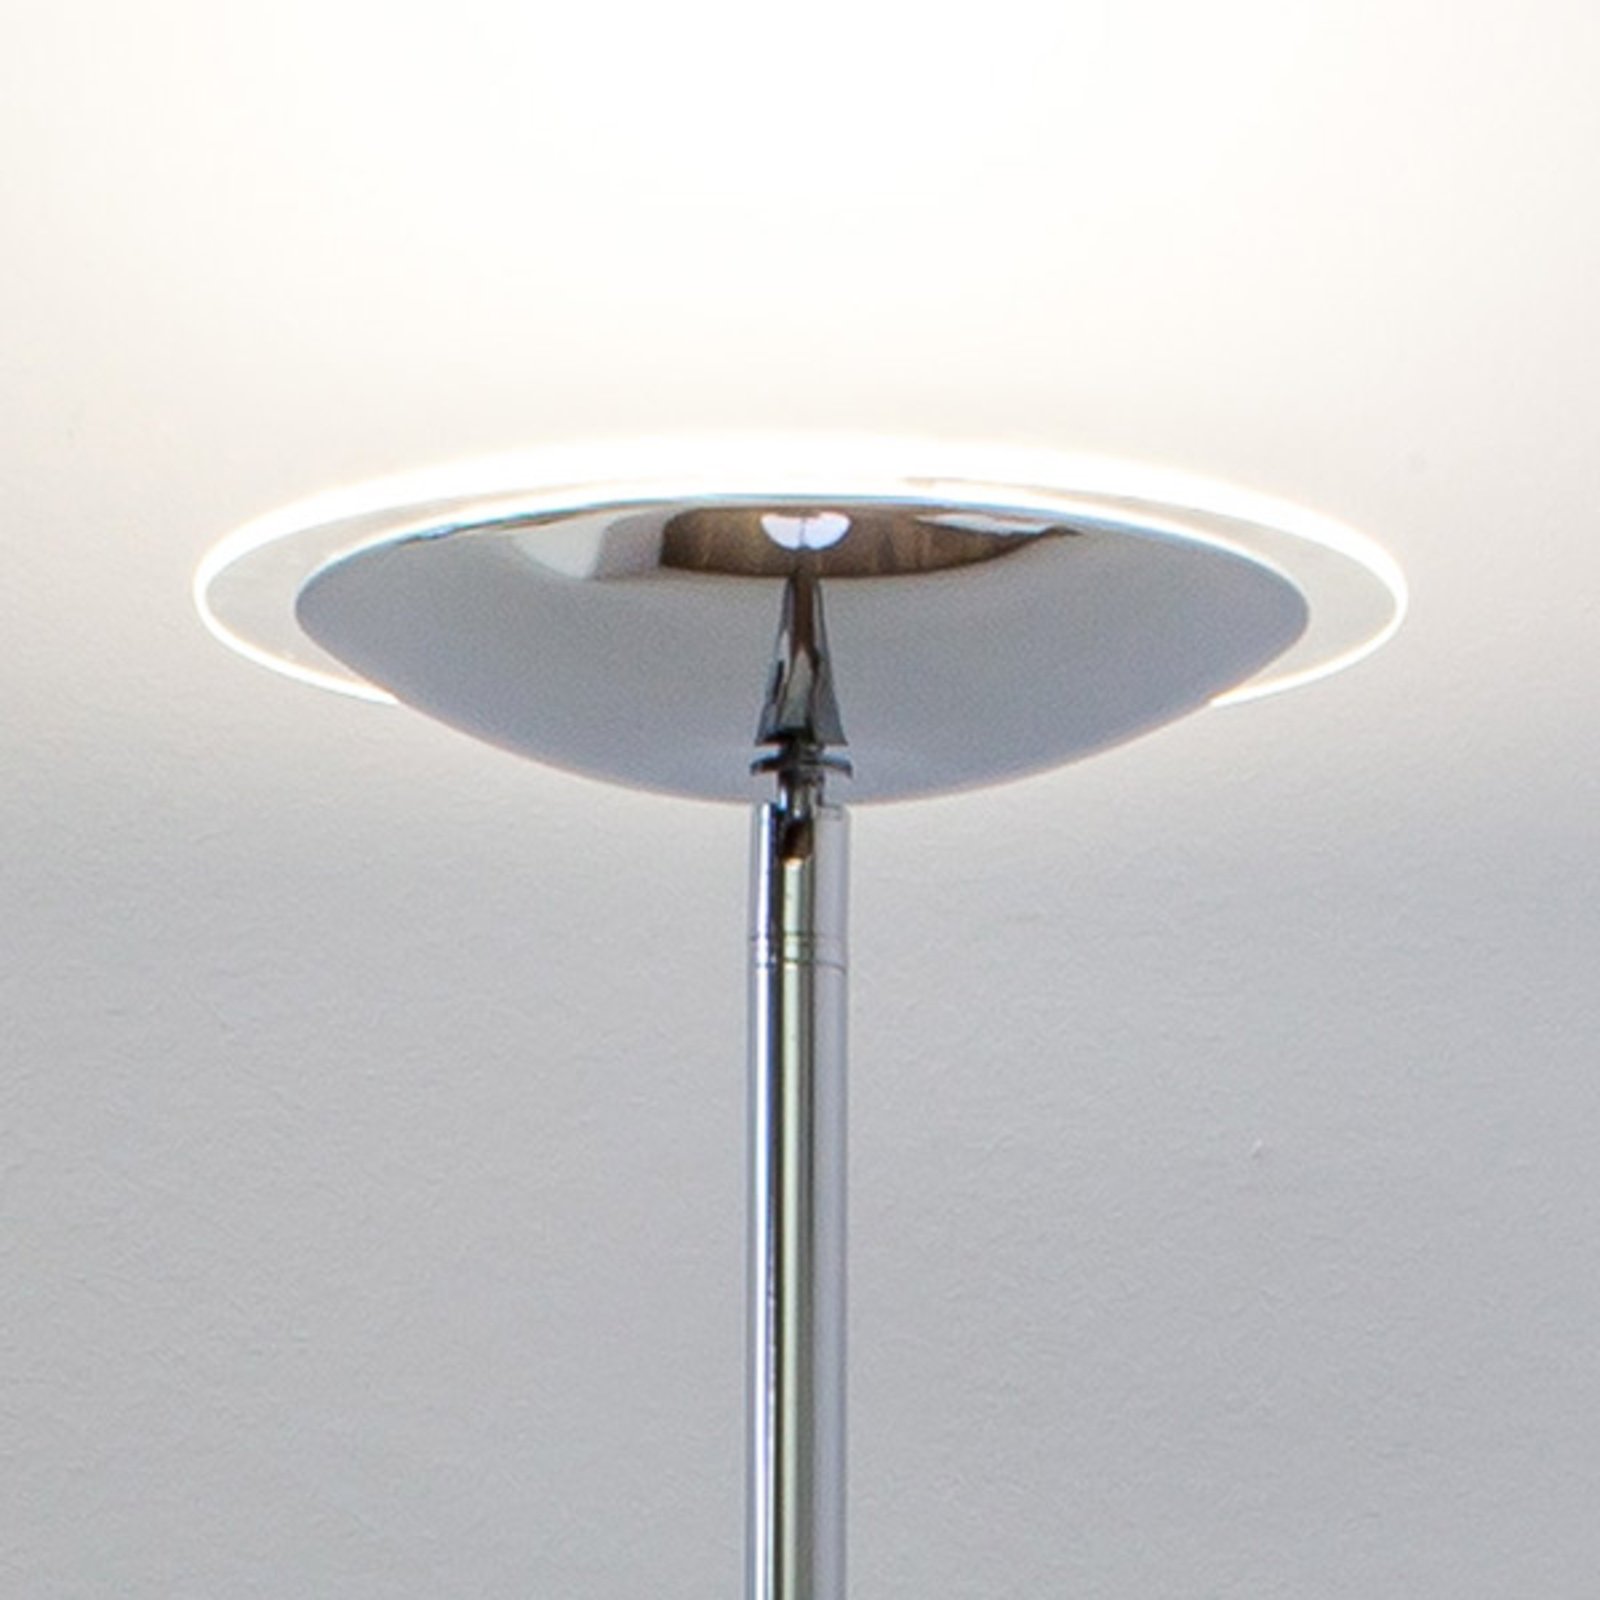 LED stojacia lampa Malea, chróm